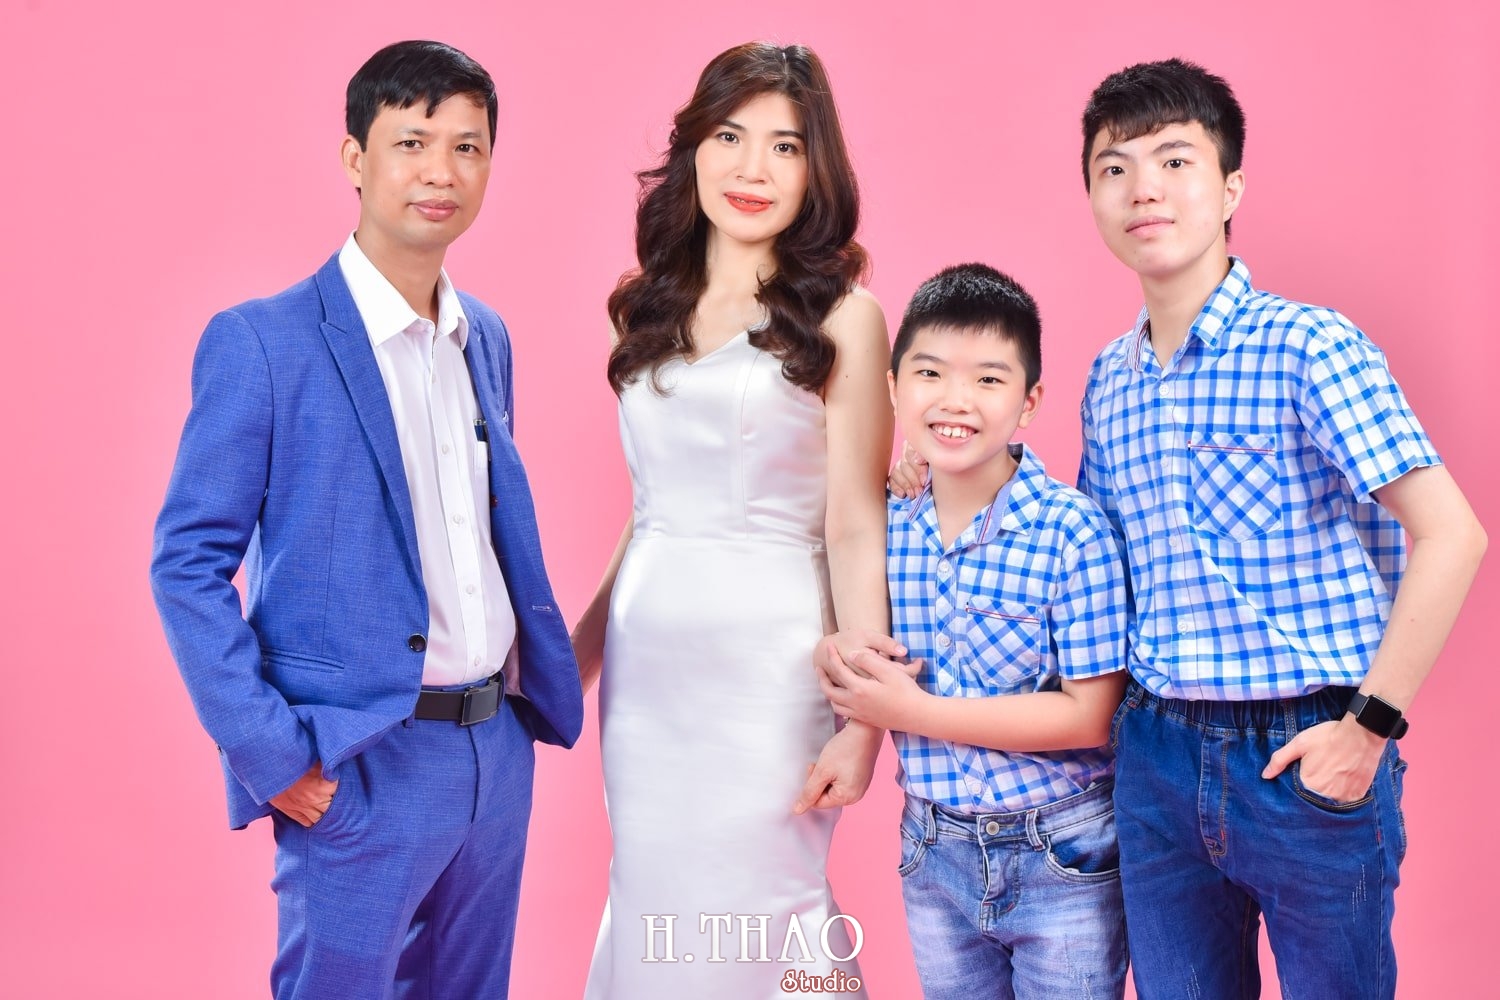 Anh gia dinh 4 nguoi 20 min - 45 cách tạo dáng chụp ảnh gia đình 4 người ấn tượng nhất - HThao Studio